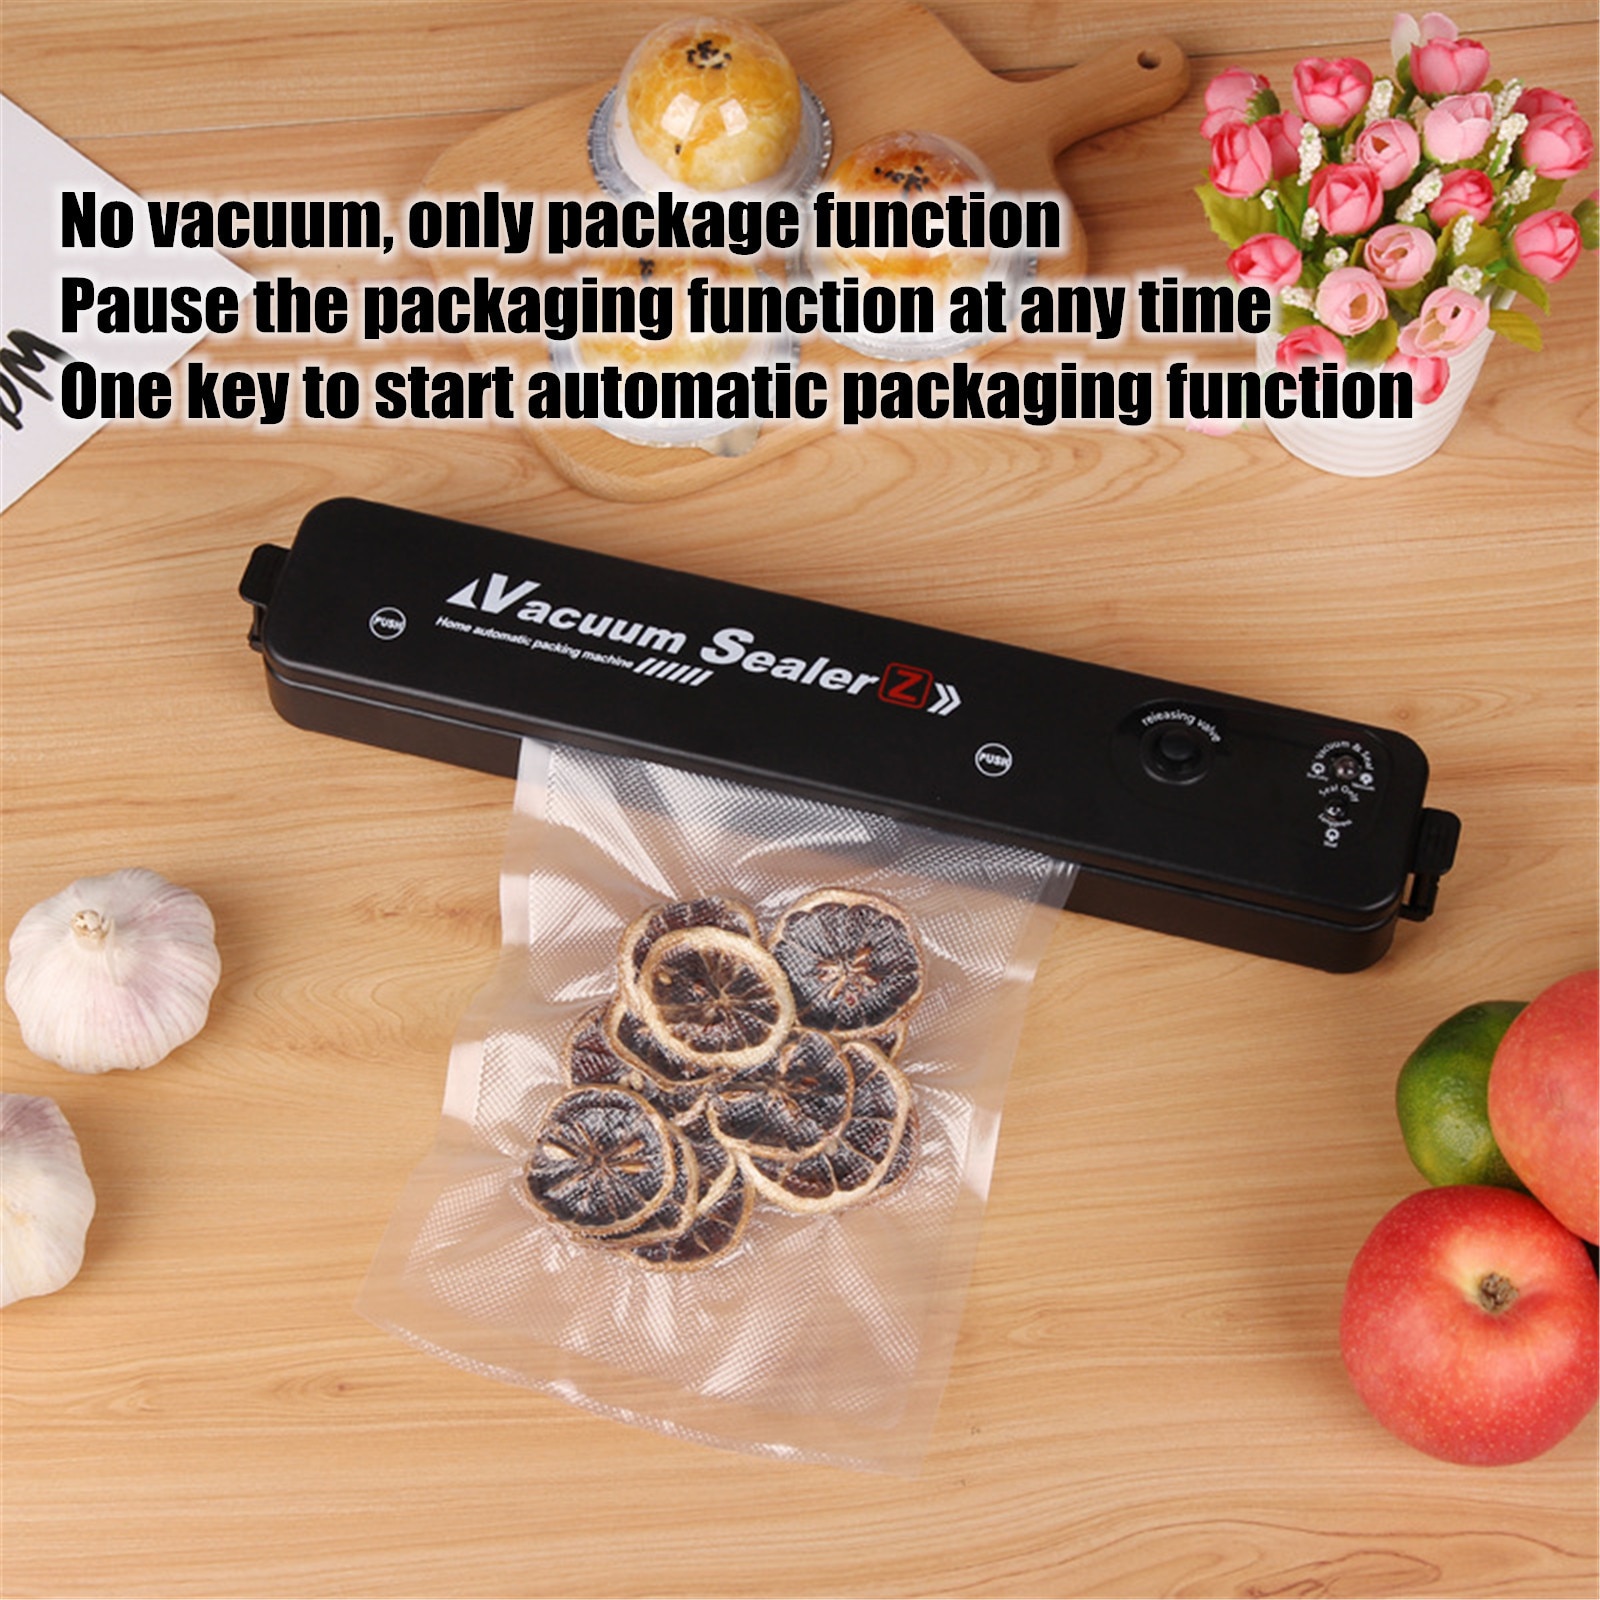 2Pc Huishoudelijke Vacuum Sealer Kan Verzegelen Voedsel, bespaar Ruimte En Houden Voedsel Verse Vacuüm Sealer Verpakking Machine Voor Thuis Keuken # G30